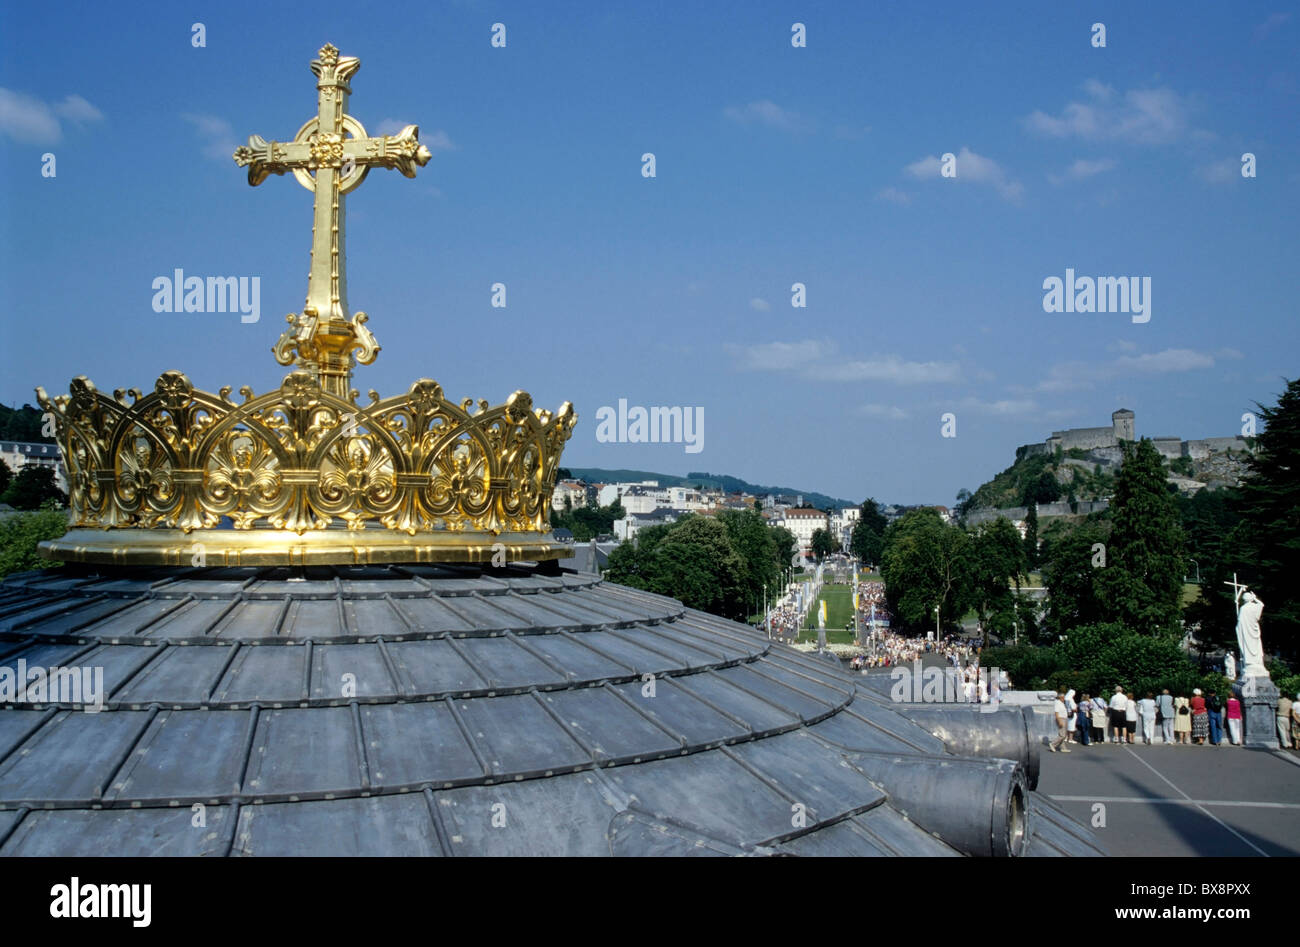 Croce dorata sulla sommità del tetto a cupola della Basilica di Nostra Signora del Rosario a Lourdes, Francia. Foto Stock